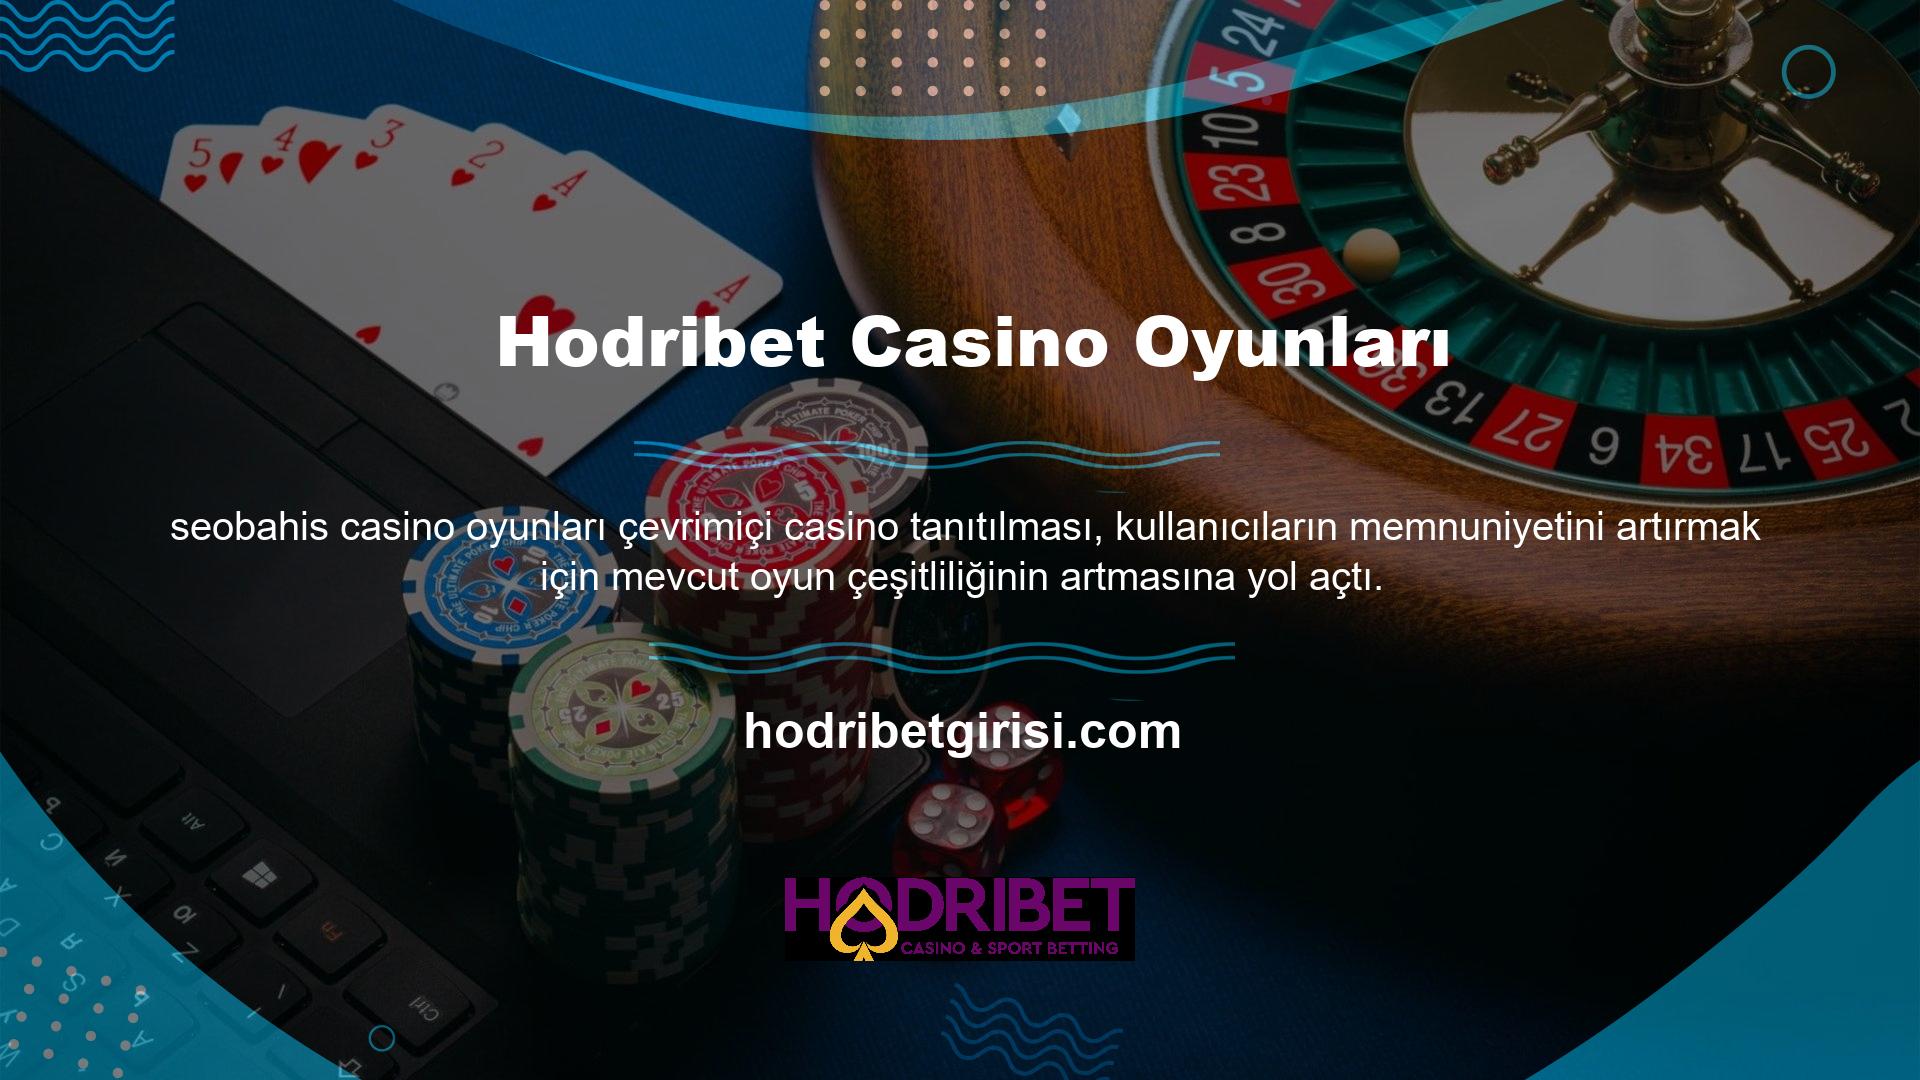 Hodribet Affiliate web sitesi, slotlar, bingo ve canlı casino oyunları dahil olmak üzere çeşitli oyun seçenekleri sunar